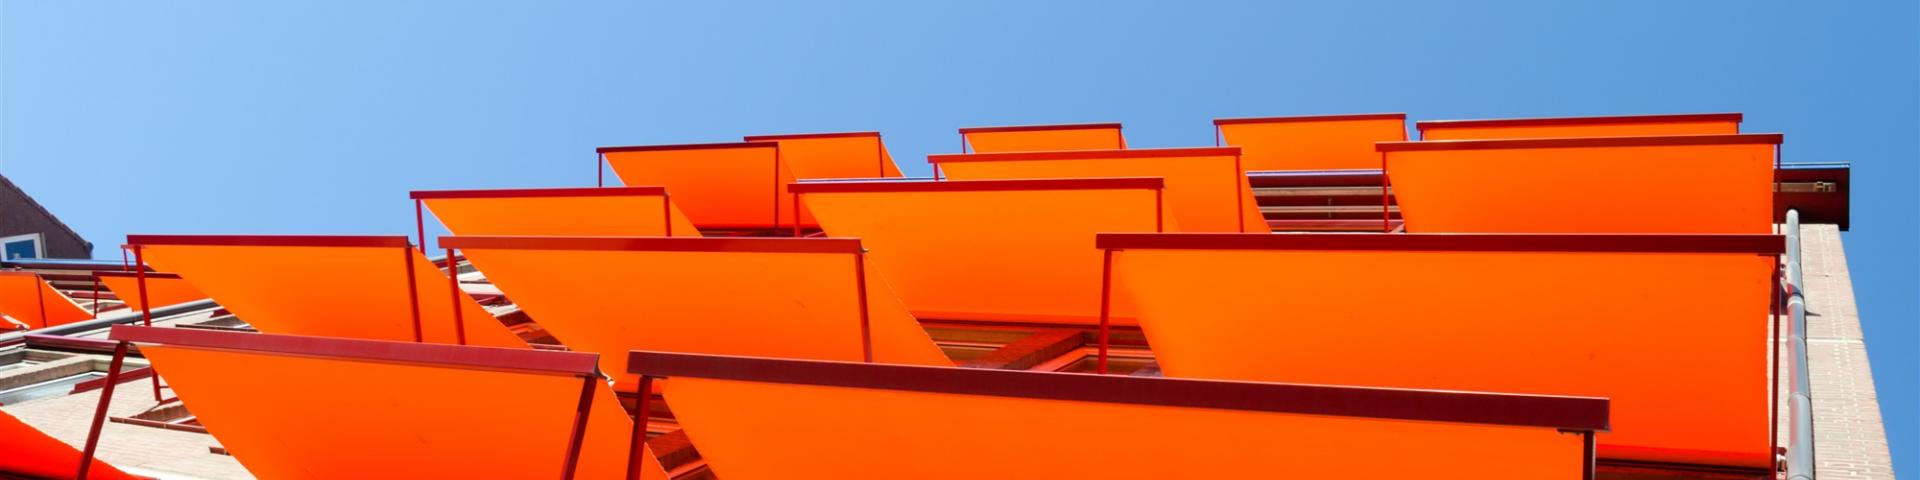 Oranje zonneschermen uitgeklapt boven ramen van woonhuis